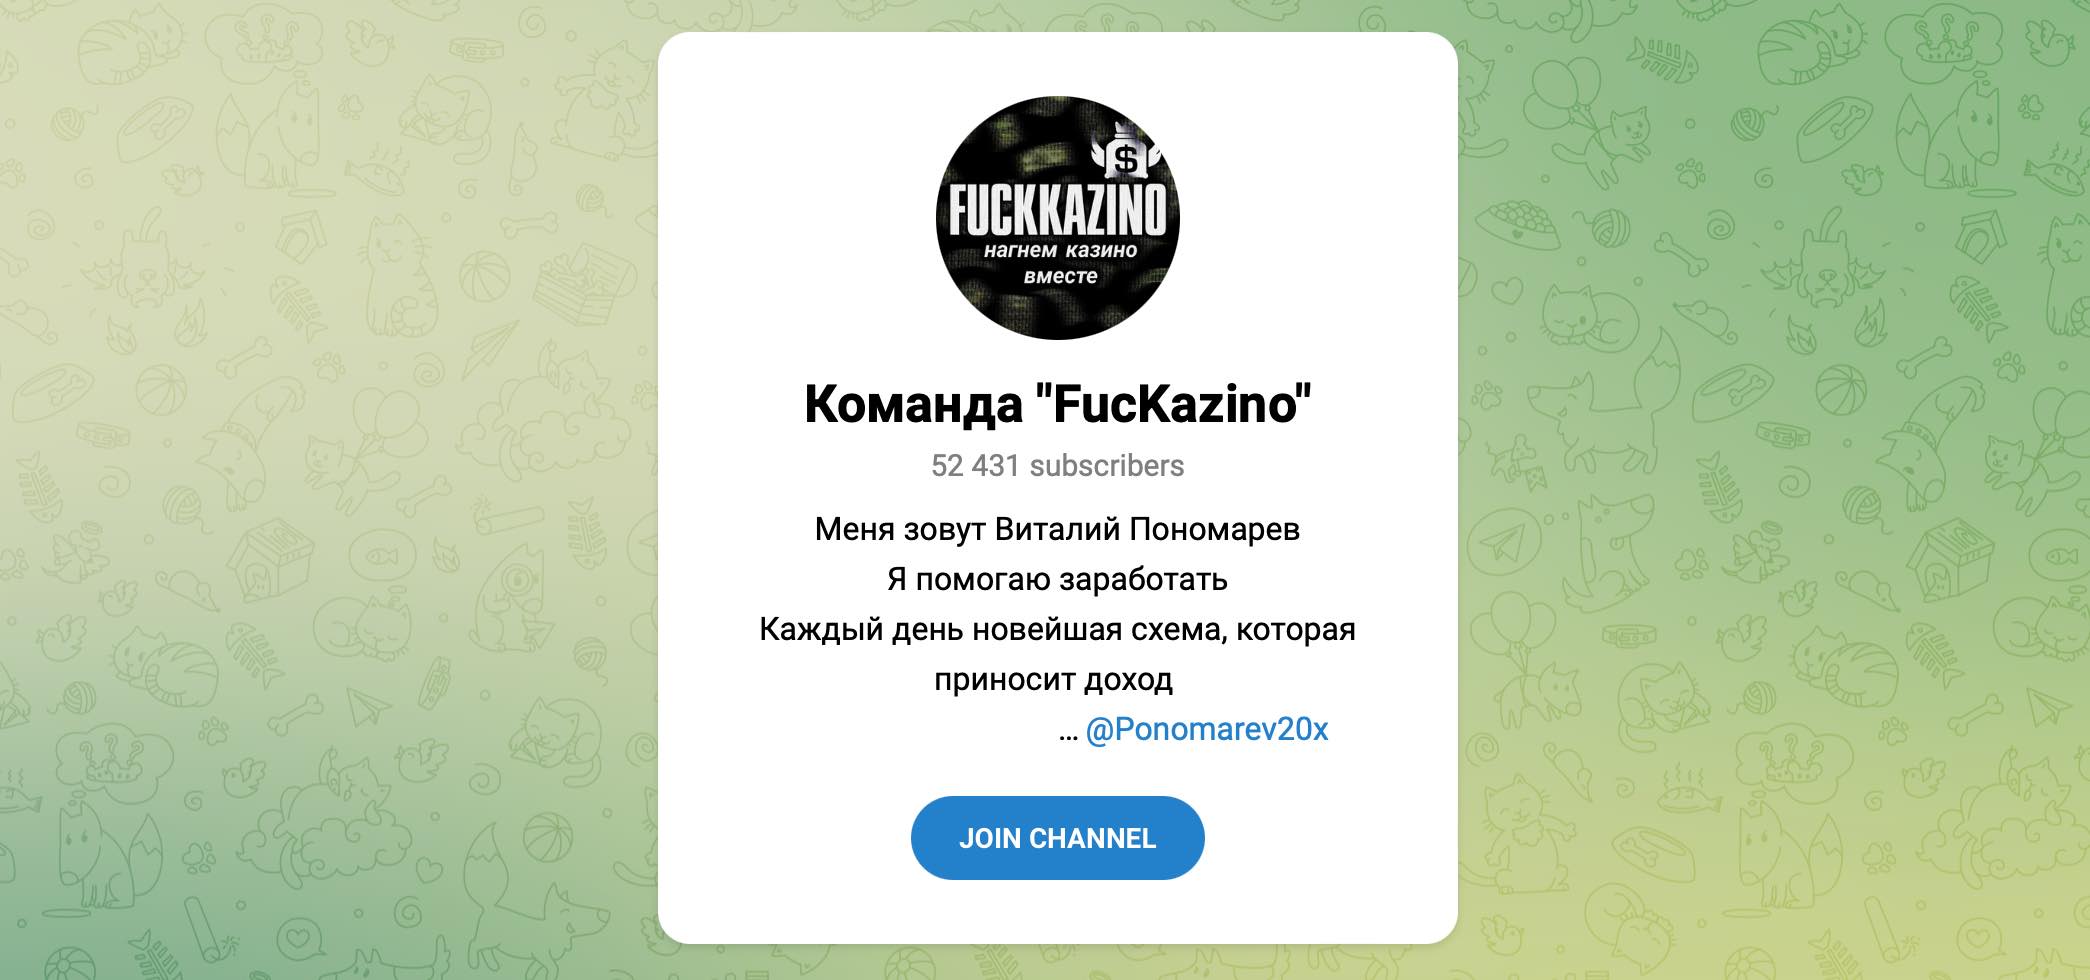 Внешний вид телеграм канала FucKazino